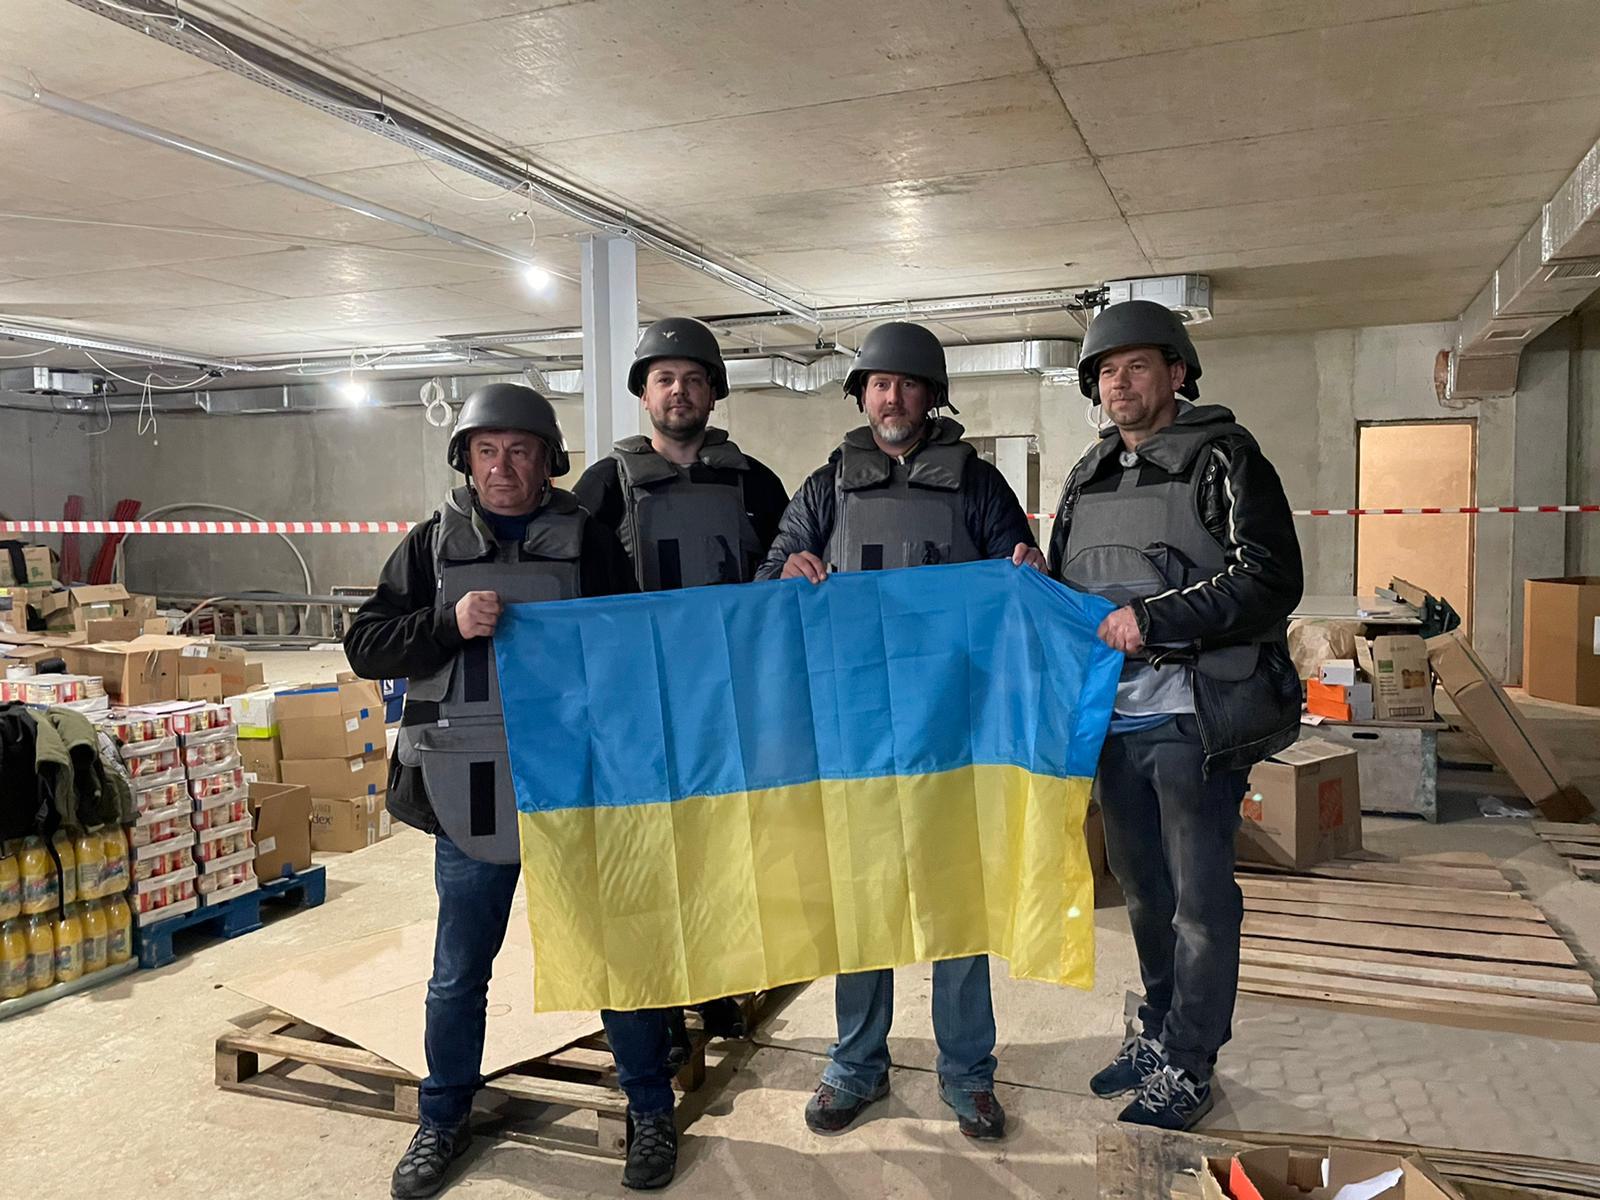 Volunteers wear body armor to deliver supplies inside Ukraine.